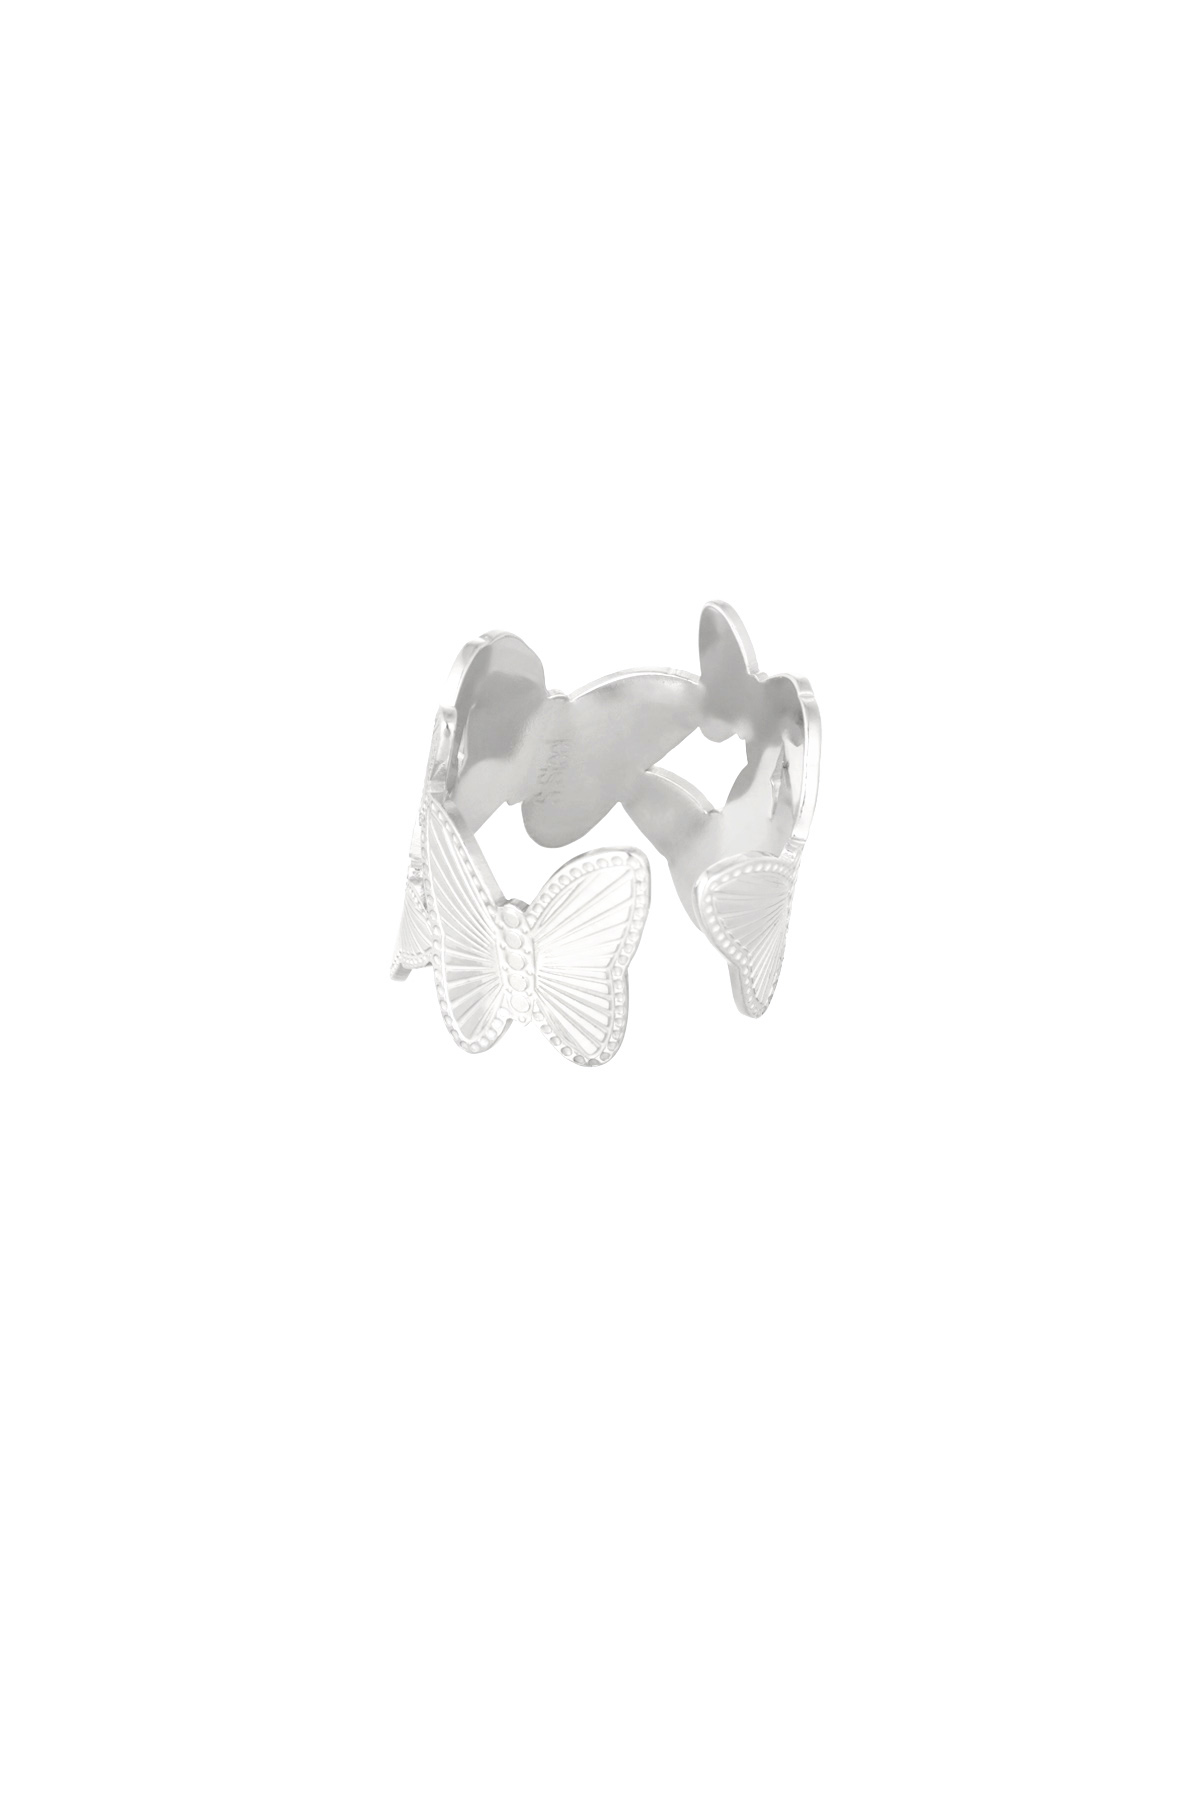 Anello farfalle grandi - Argento h5 Immagine2